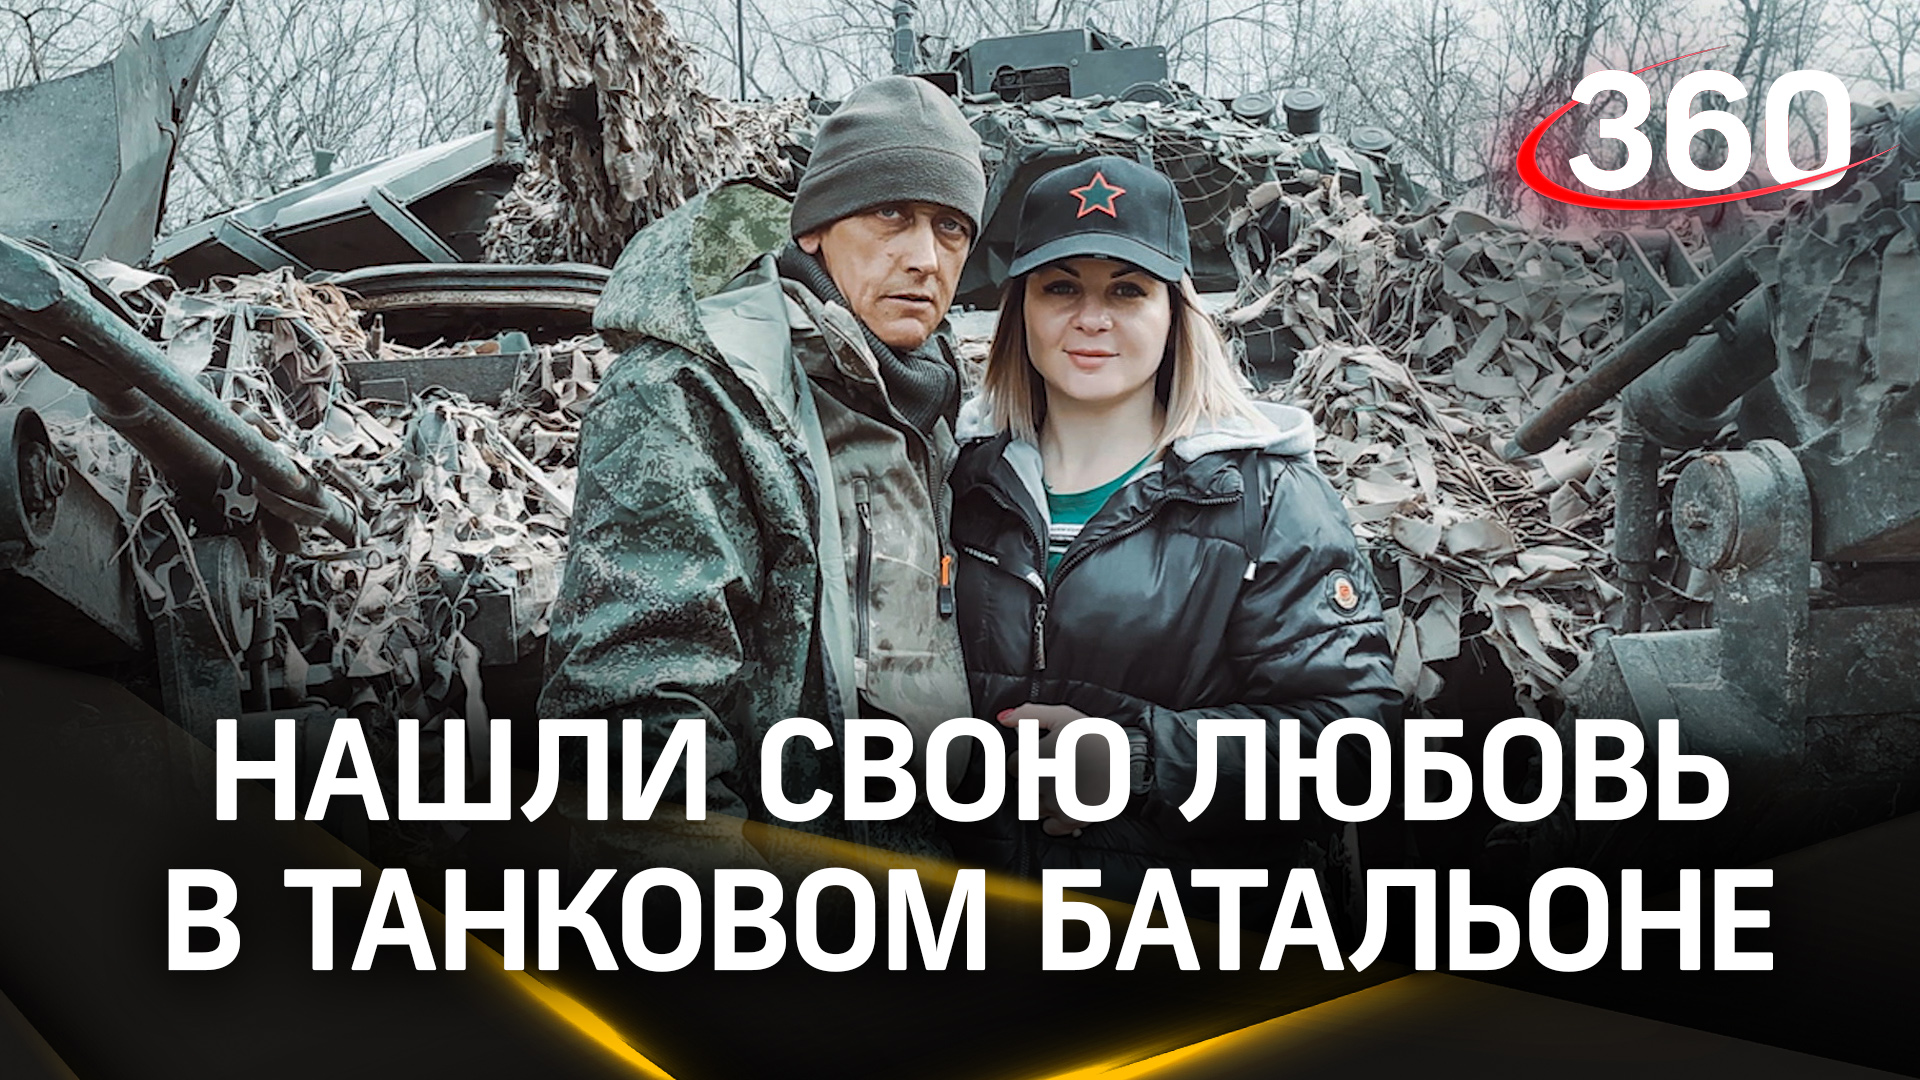 Армия стала их судьбой: супруги Тарбаевы познакомились на службе в танковом батальоне в ДНР